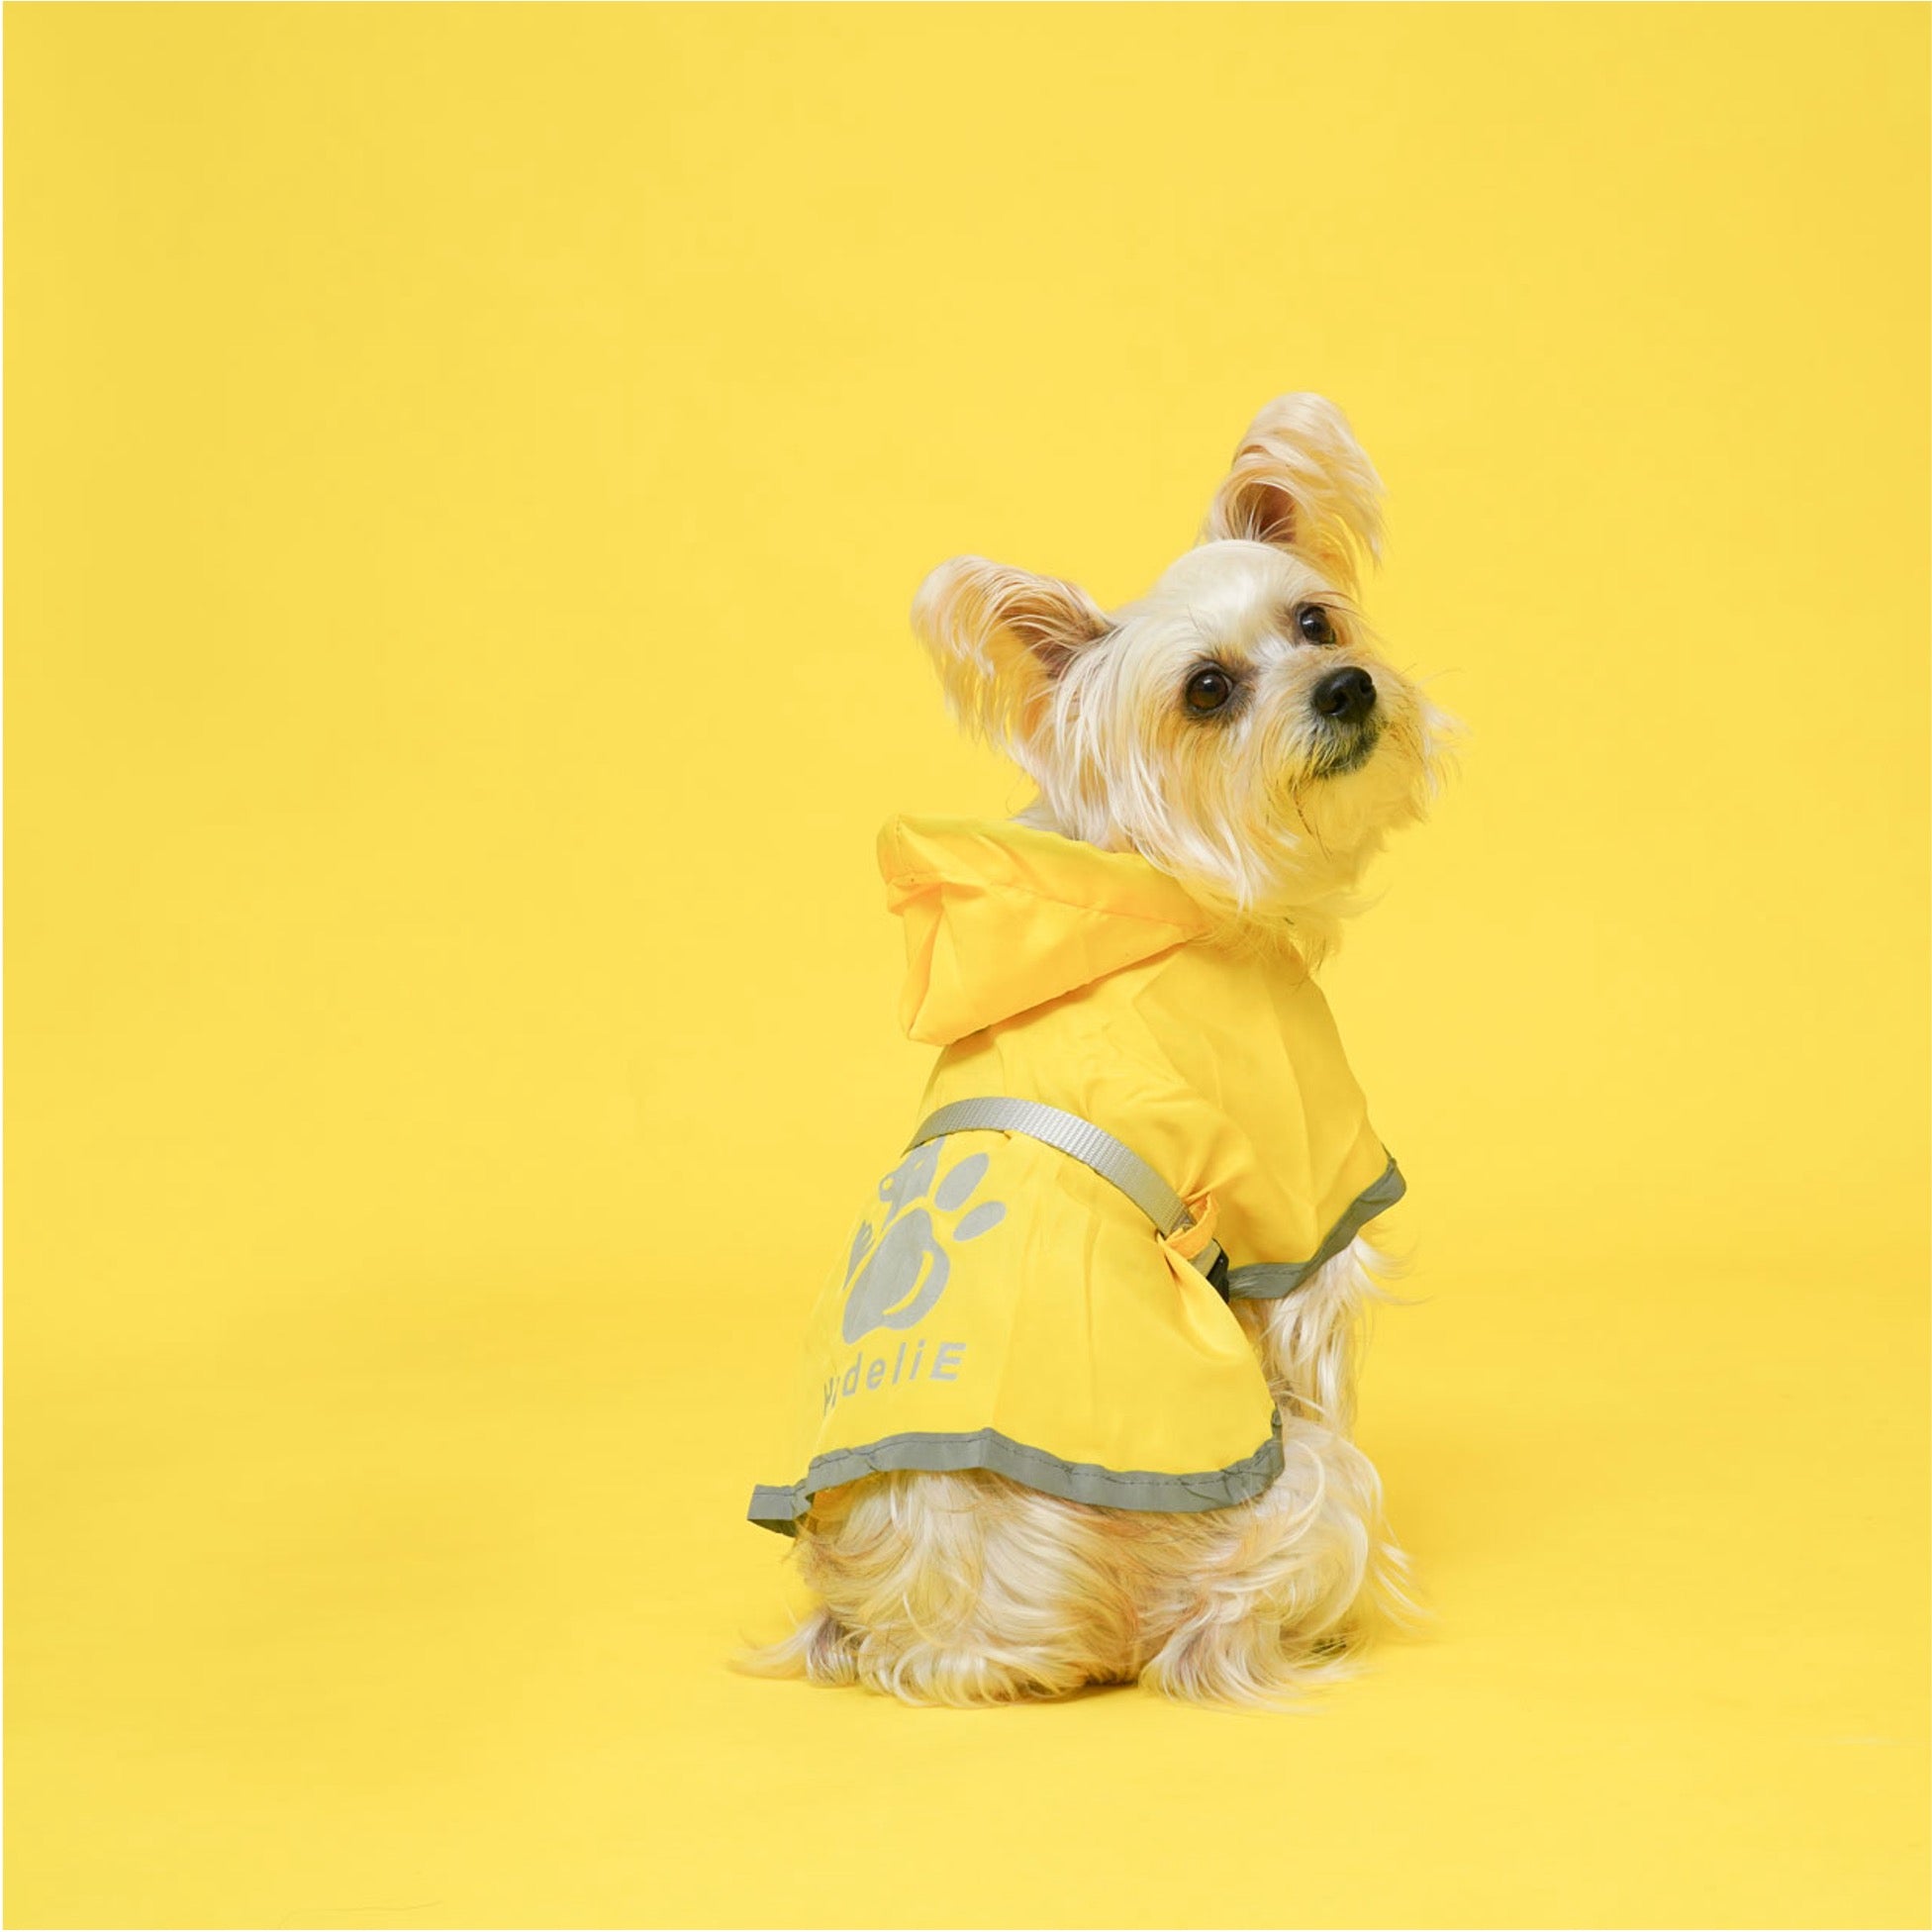 Buckle-Up Reflective Dog Raincoat with Removable Belt Set (Copy) HedeliE